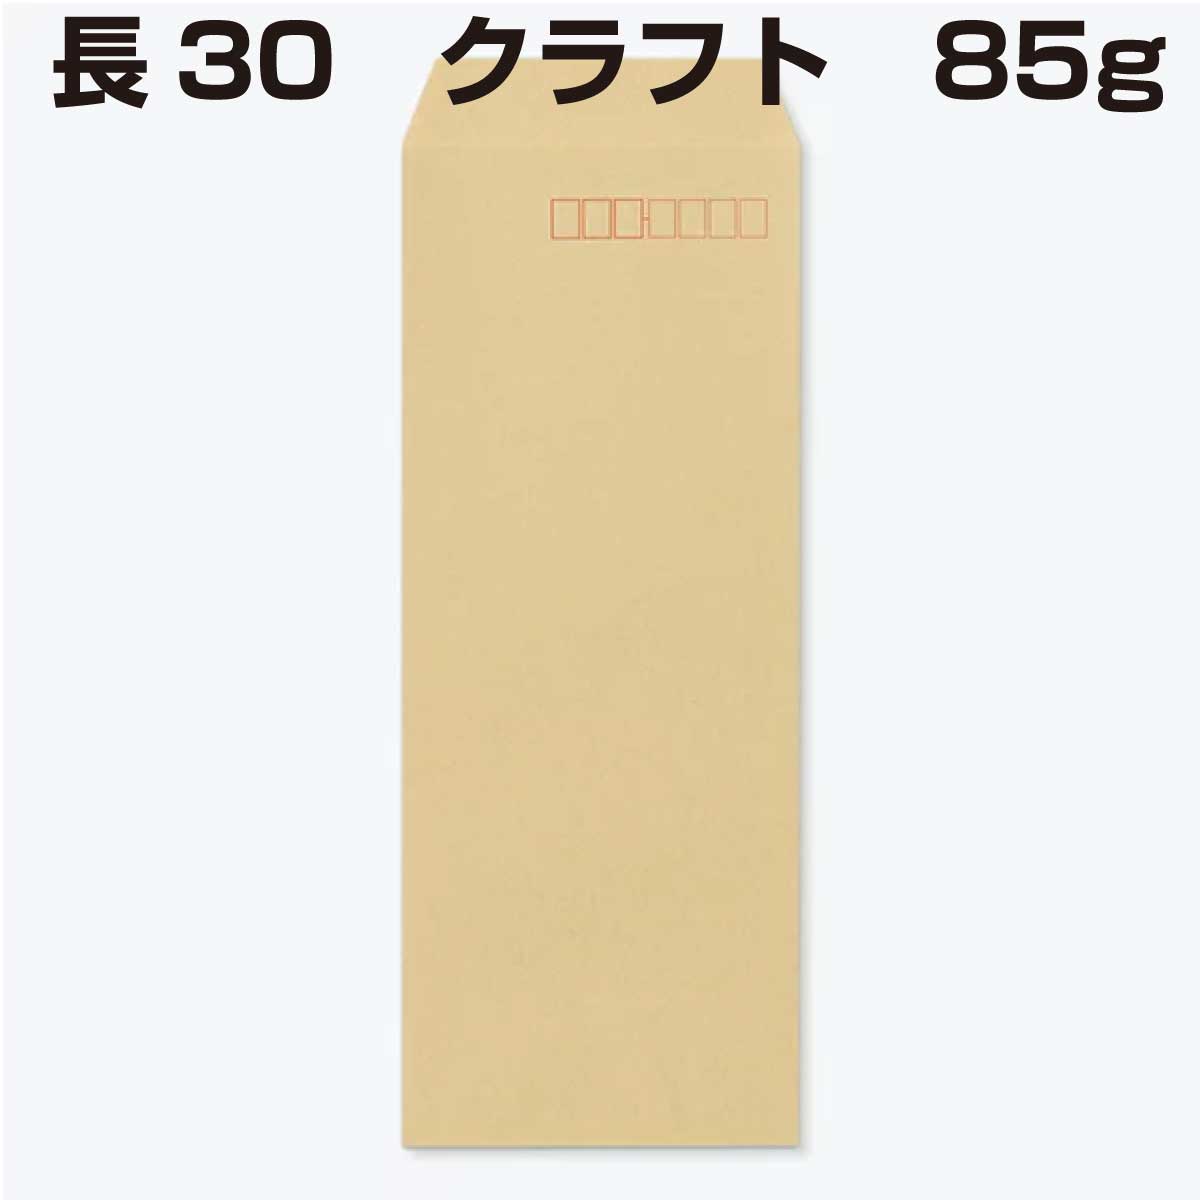 長３０封筒 A4の4つ折 210×75 が入ります 封筒 限定製作 長30 中貼 85g 【驚きの値段】 クラフト 1000枚 クラフト封筒 紙が厚いタイプです